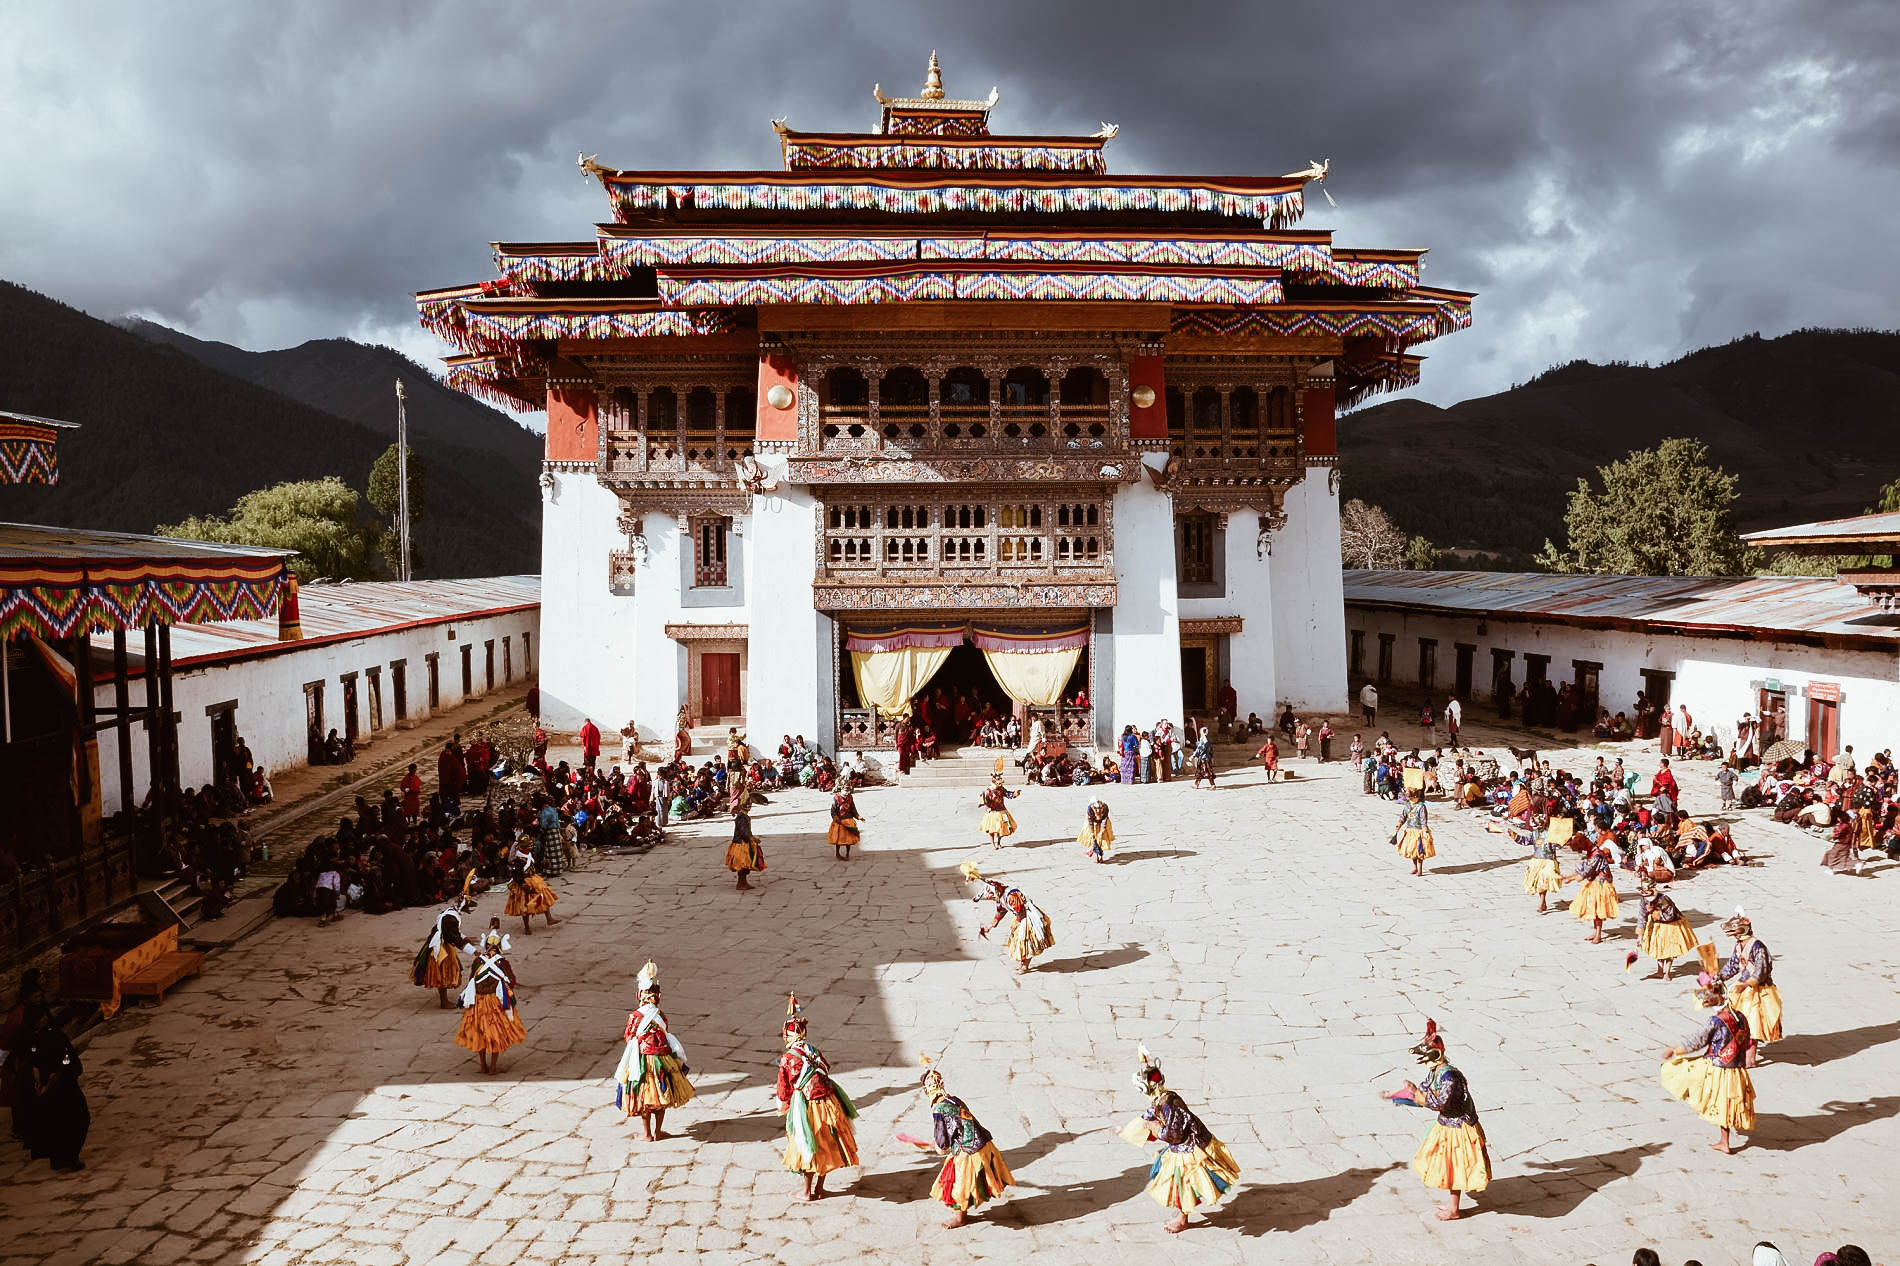 festival-gangtey-dzong-bhutan.ngsversion.1508255040657.adapt.1900.1.jpg